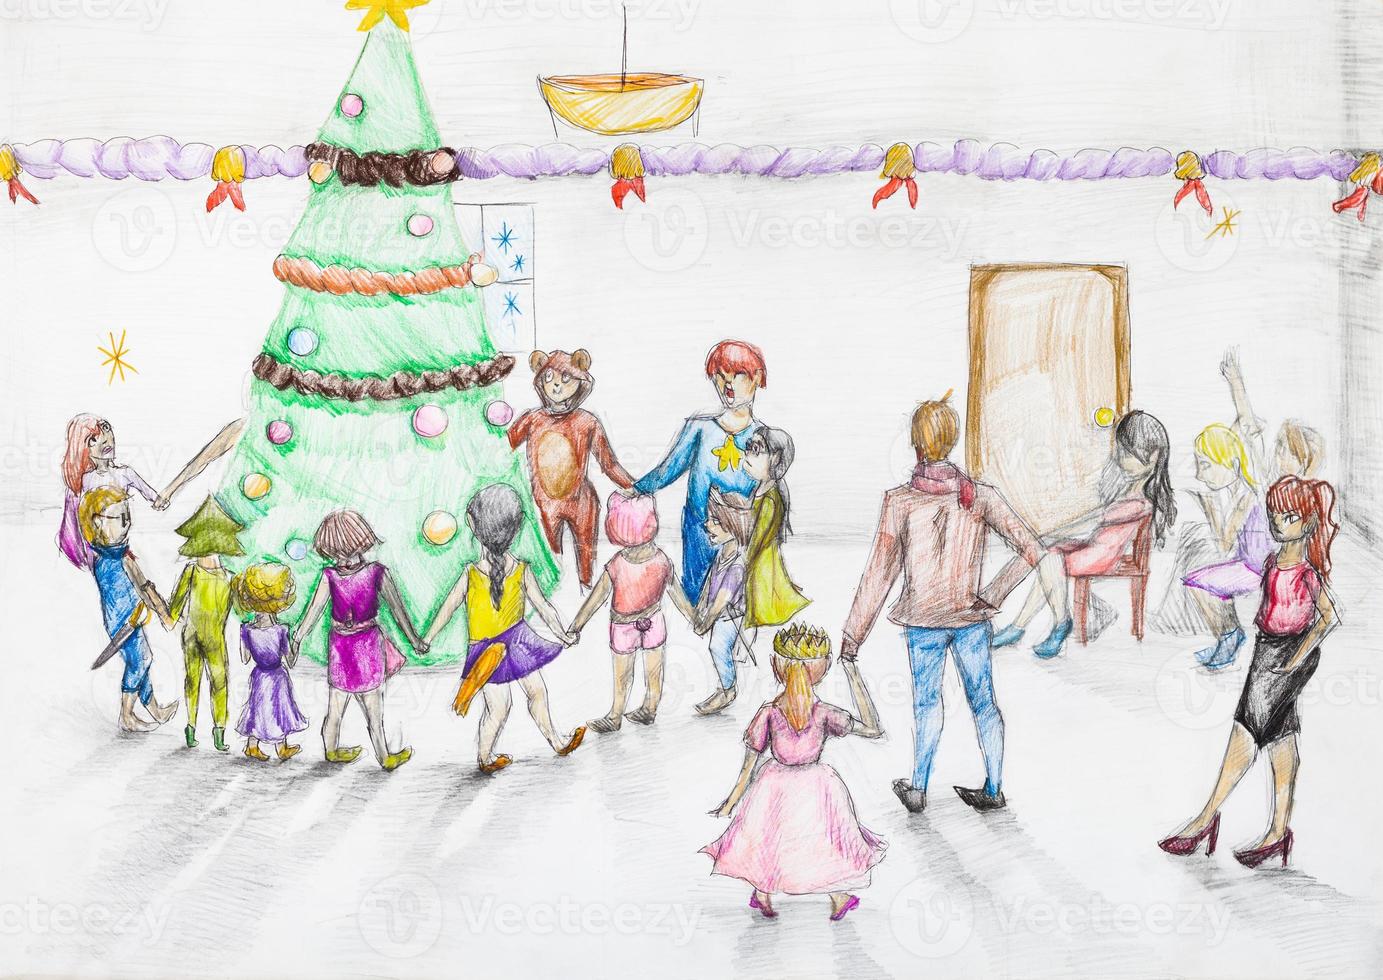 baile redondo alrededor del árbol de navidad en el jardín de infantes foto